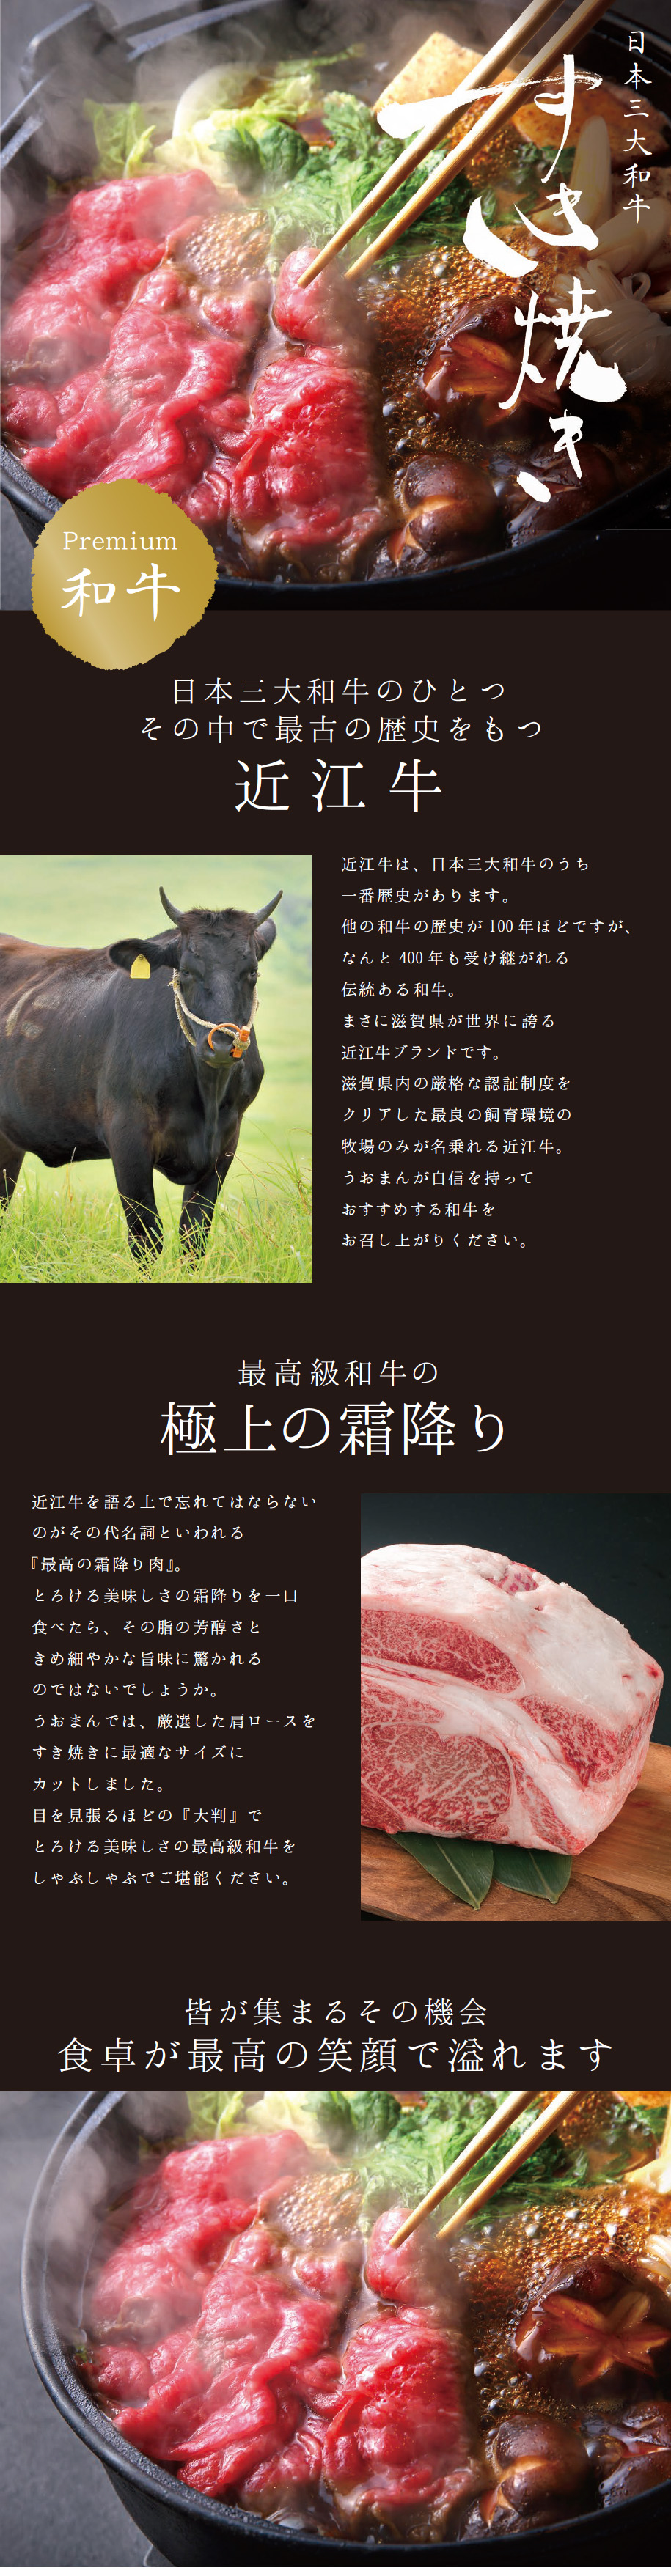 とろける美味しさの霜降りが特徴の日本三大和牛『近江牛』をすき焼き